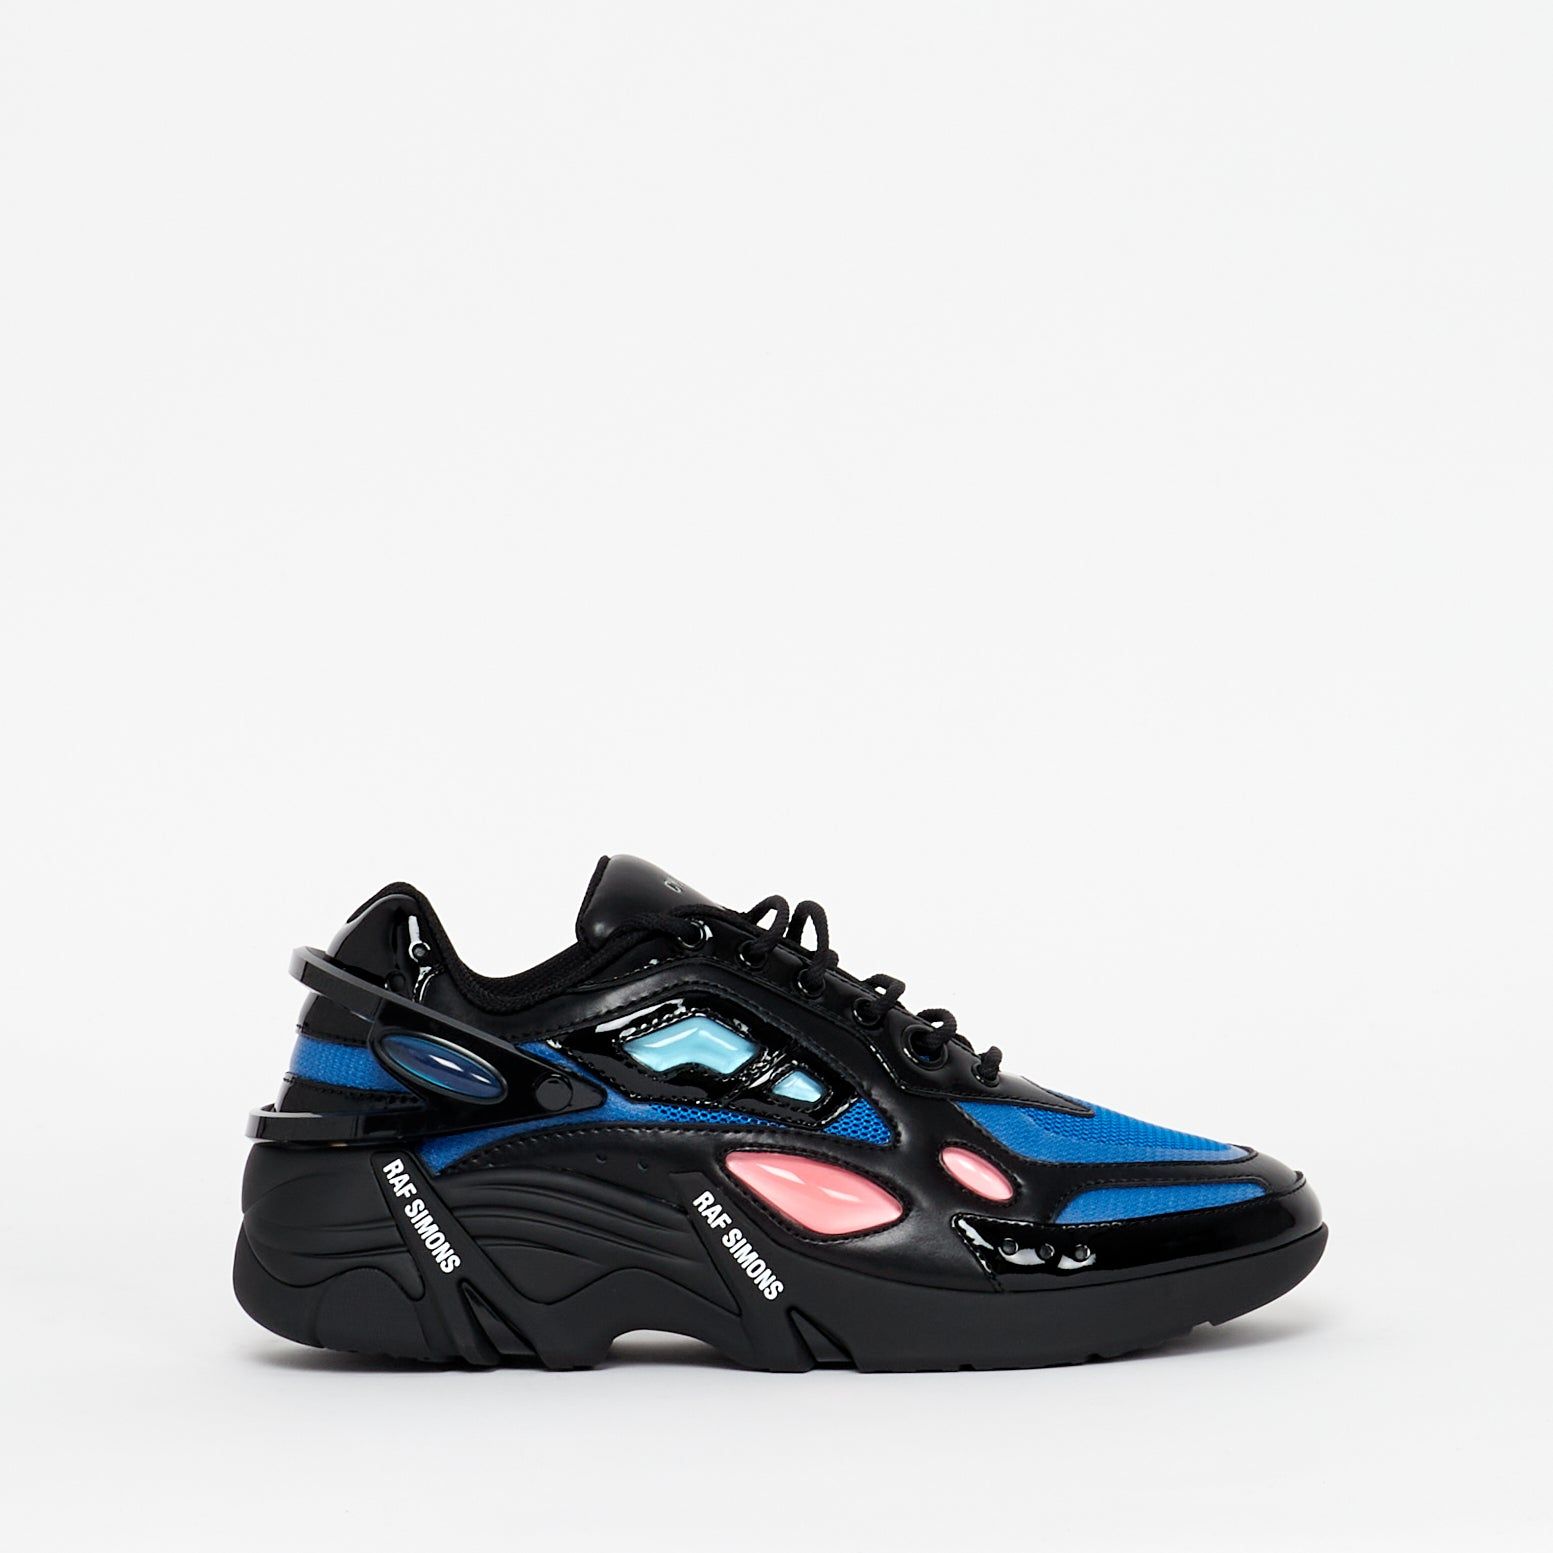 Sneaker Cylon 21 Black Blue - Lesthete raf simons